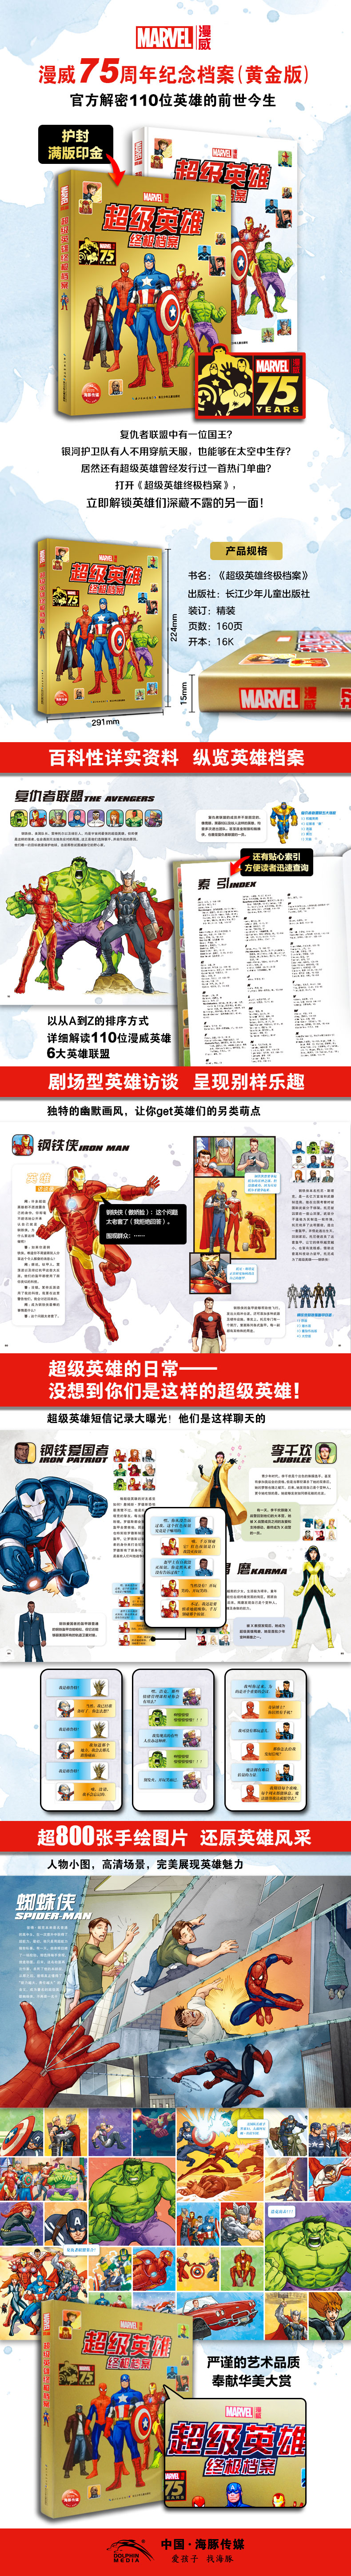 超级英雄终极档案-详情页-790.jpg